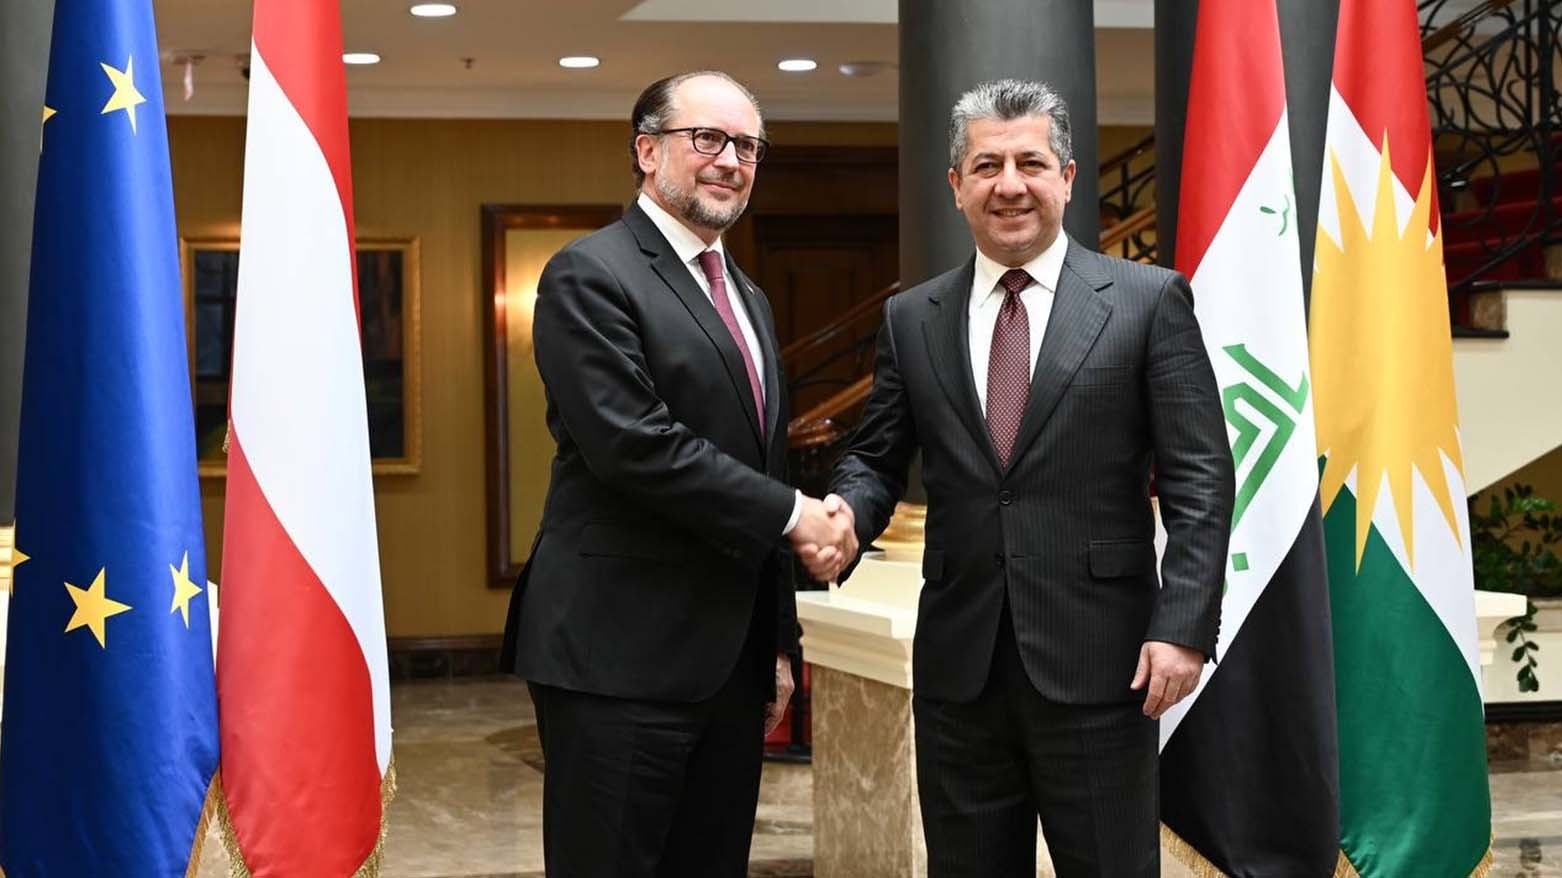 رئيس حكومة كوردستان يستقبل وزير خارجية النمسا